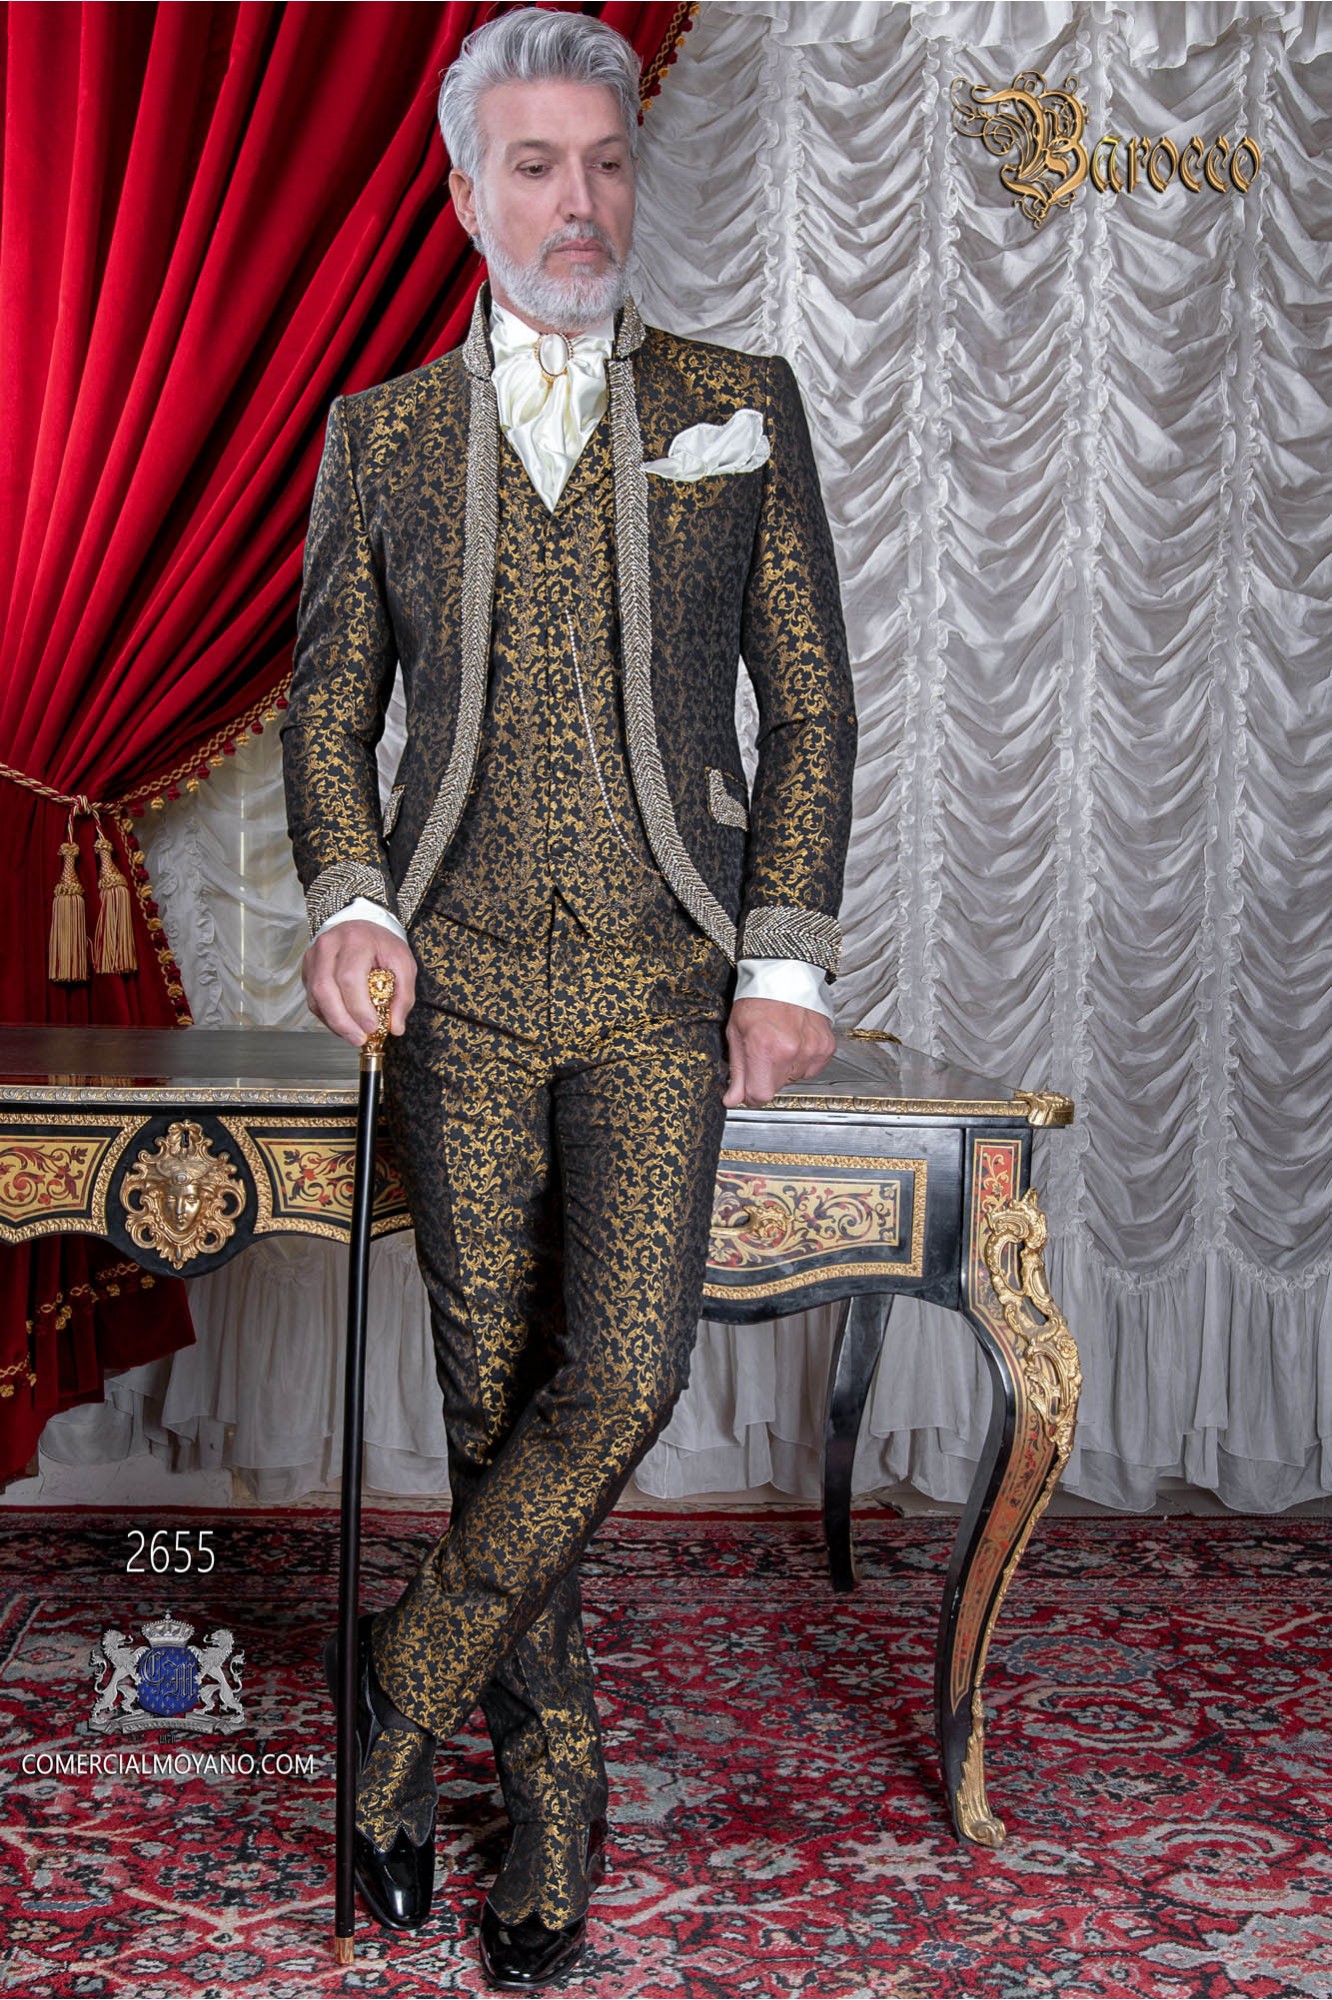 Baroque wedding suit, vintage Mao collar frock coat in black and gold floral brocade fabric with rhinestones model 2655 Mario Moyano